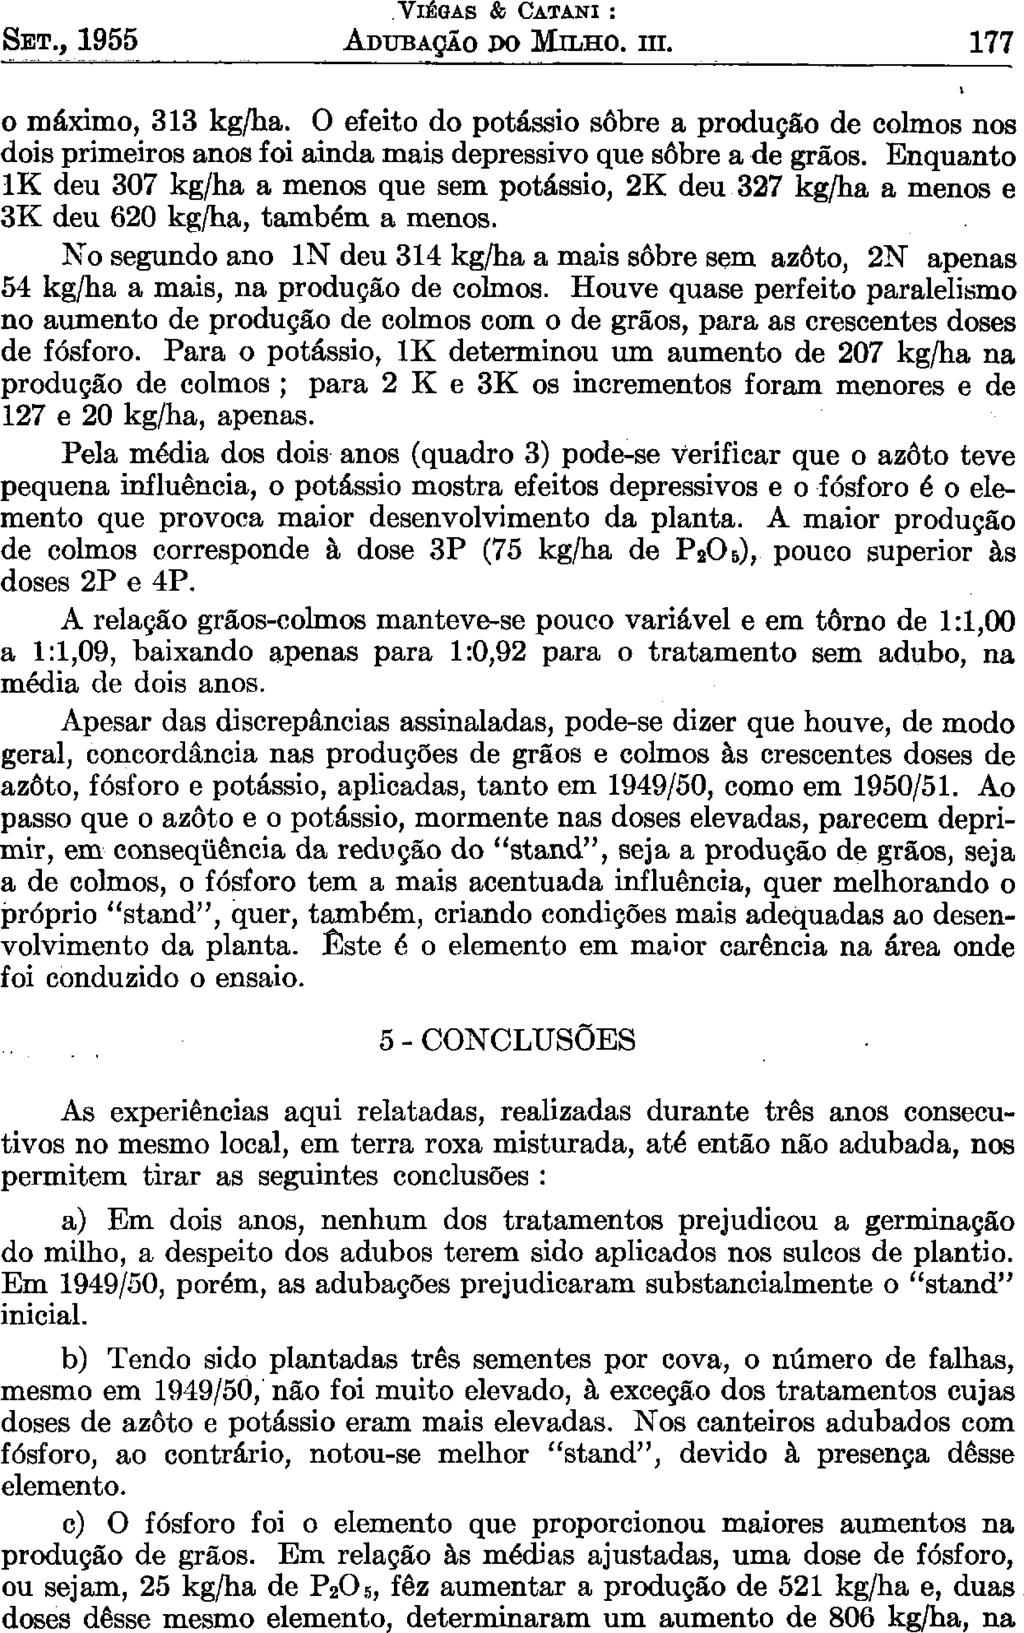 SET., 1955 VIEGAS & CATANI : ADUBAÇÃO DO MILHO. HI. 177 o máximo, 313 kg/ha. O efeito do potássio sobre a produção de colmos nos dois primeiros anos foi ainda mais depressivo que sobre a de grãos.